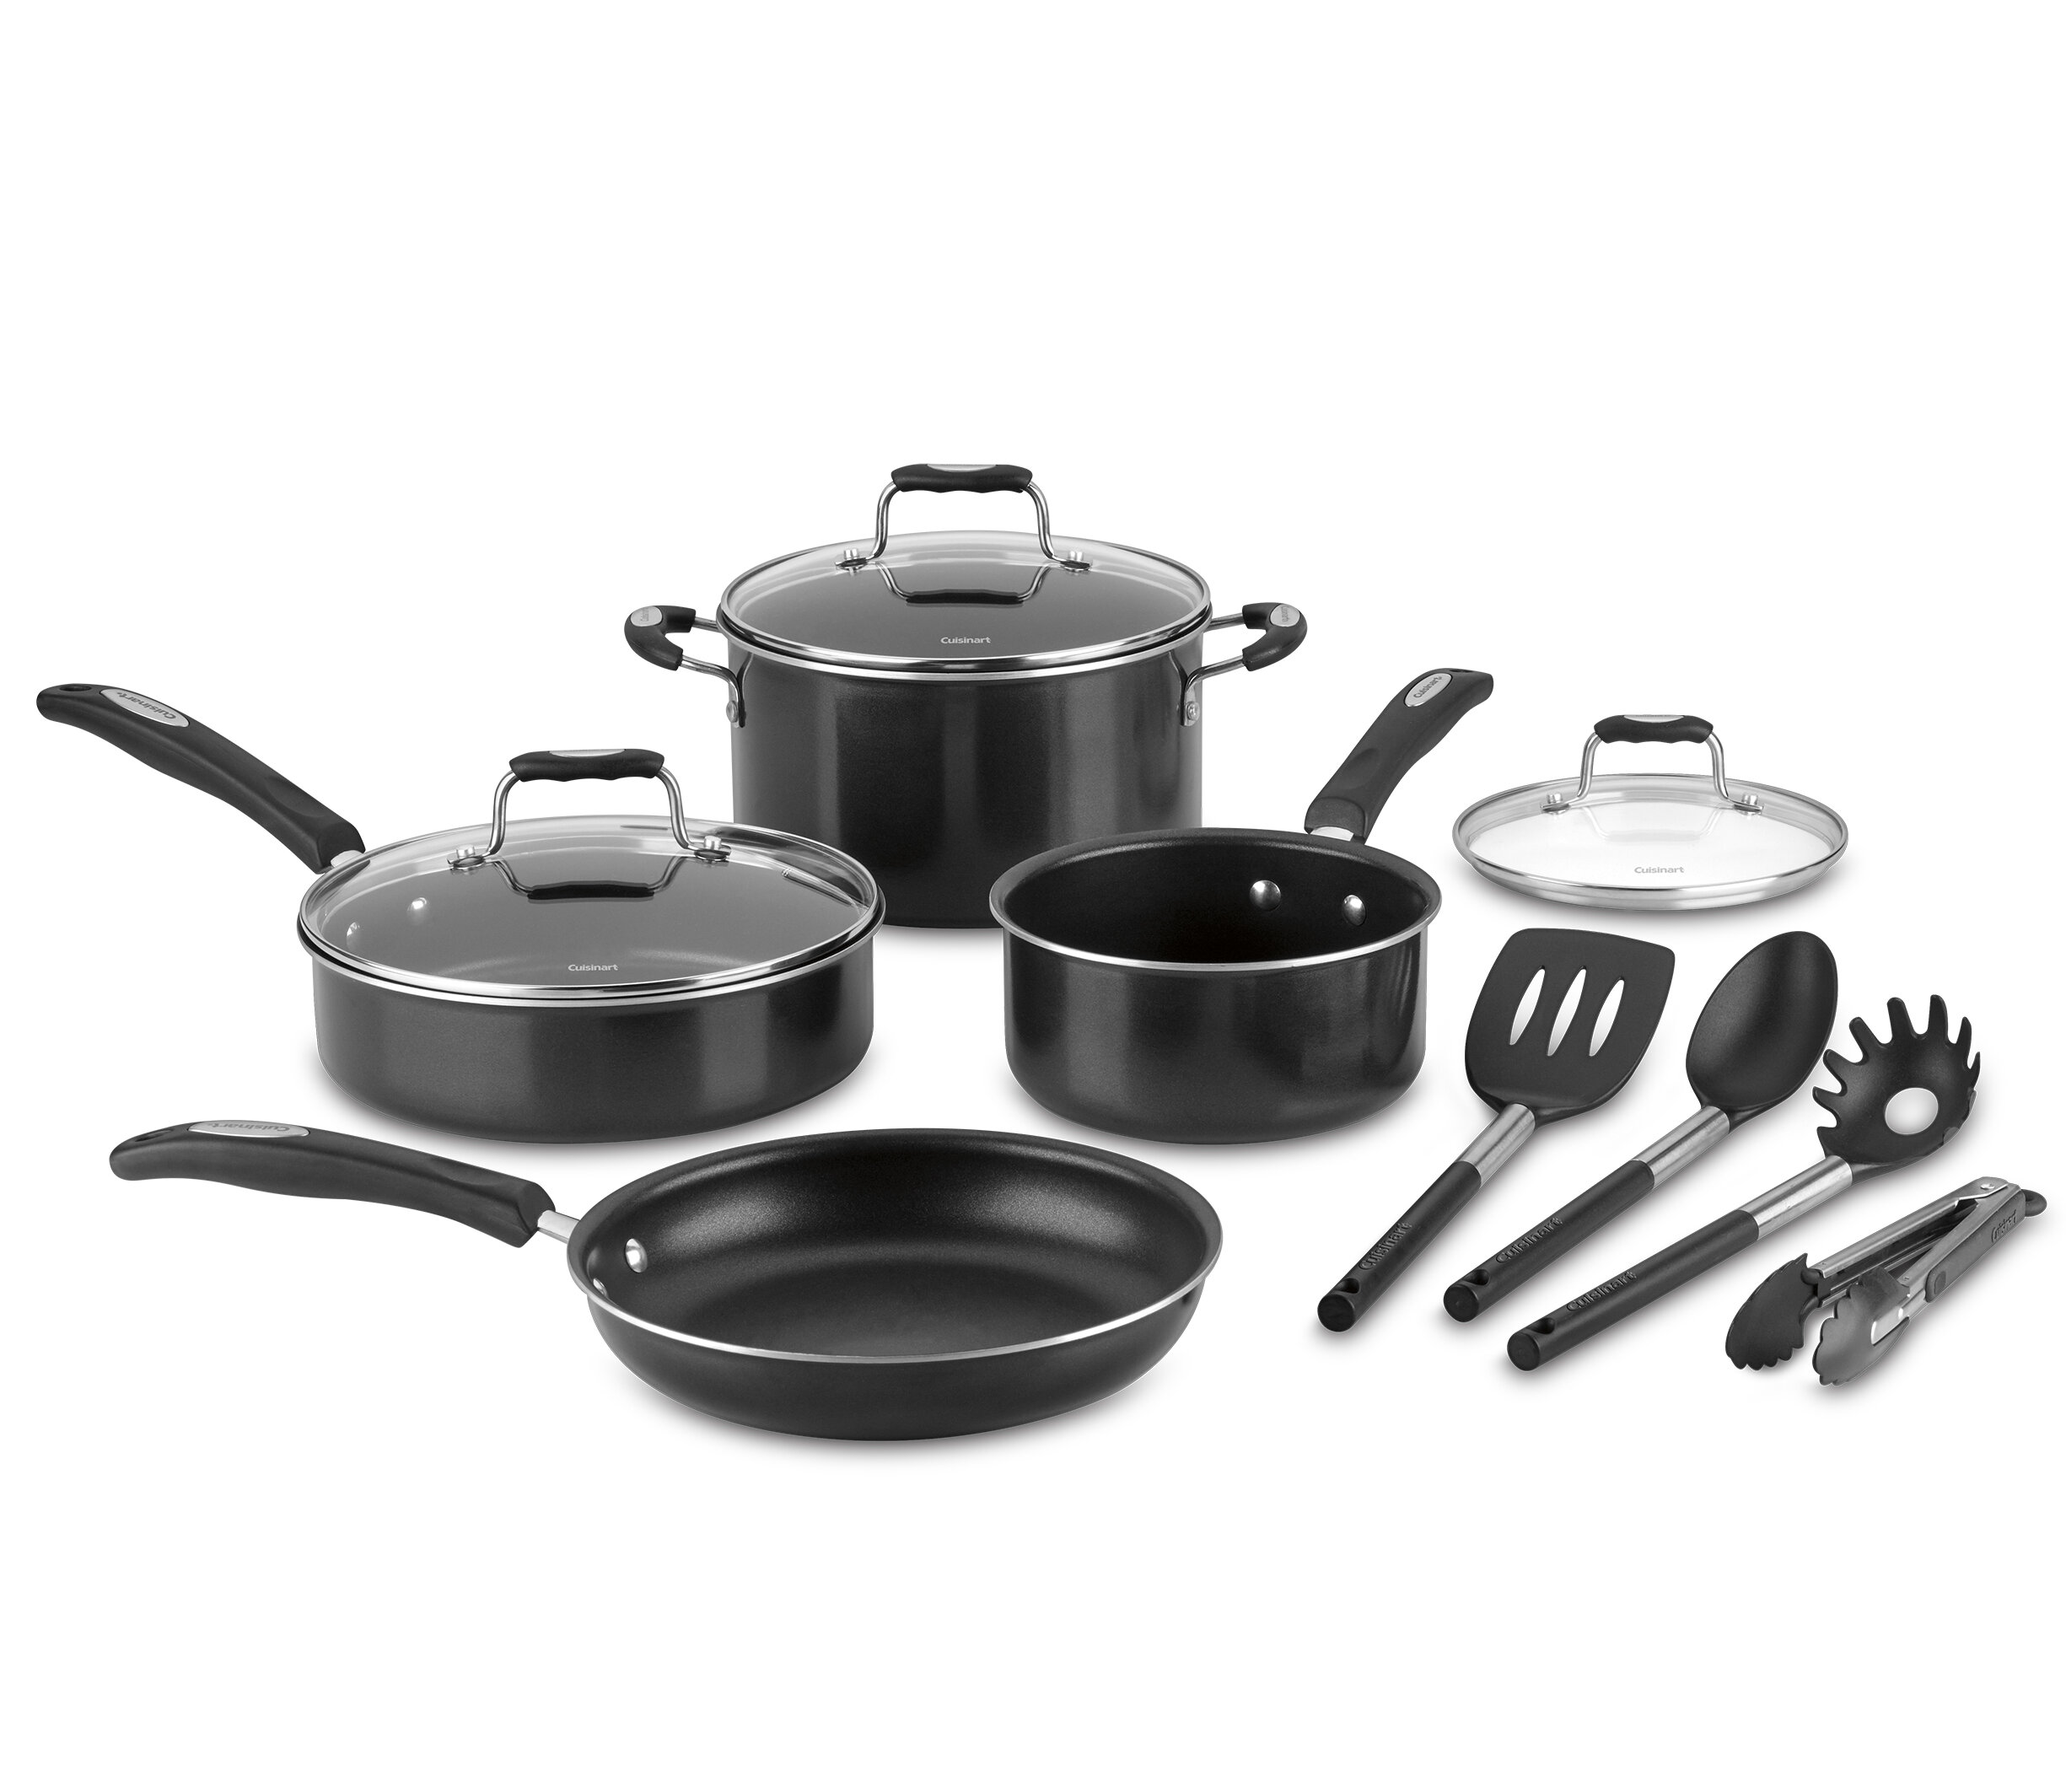 Cuisinart Advantage Ceramica 11-Piece Cookware Set, Black